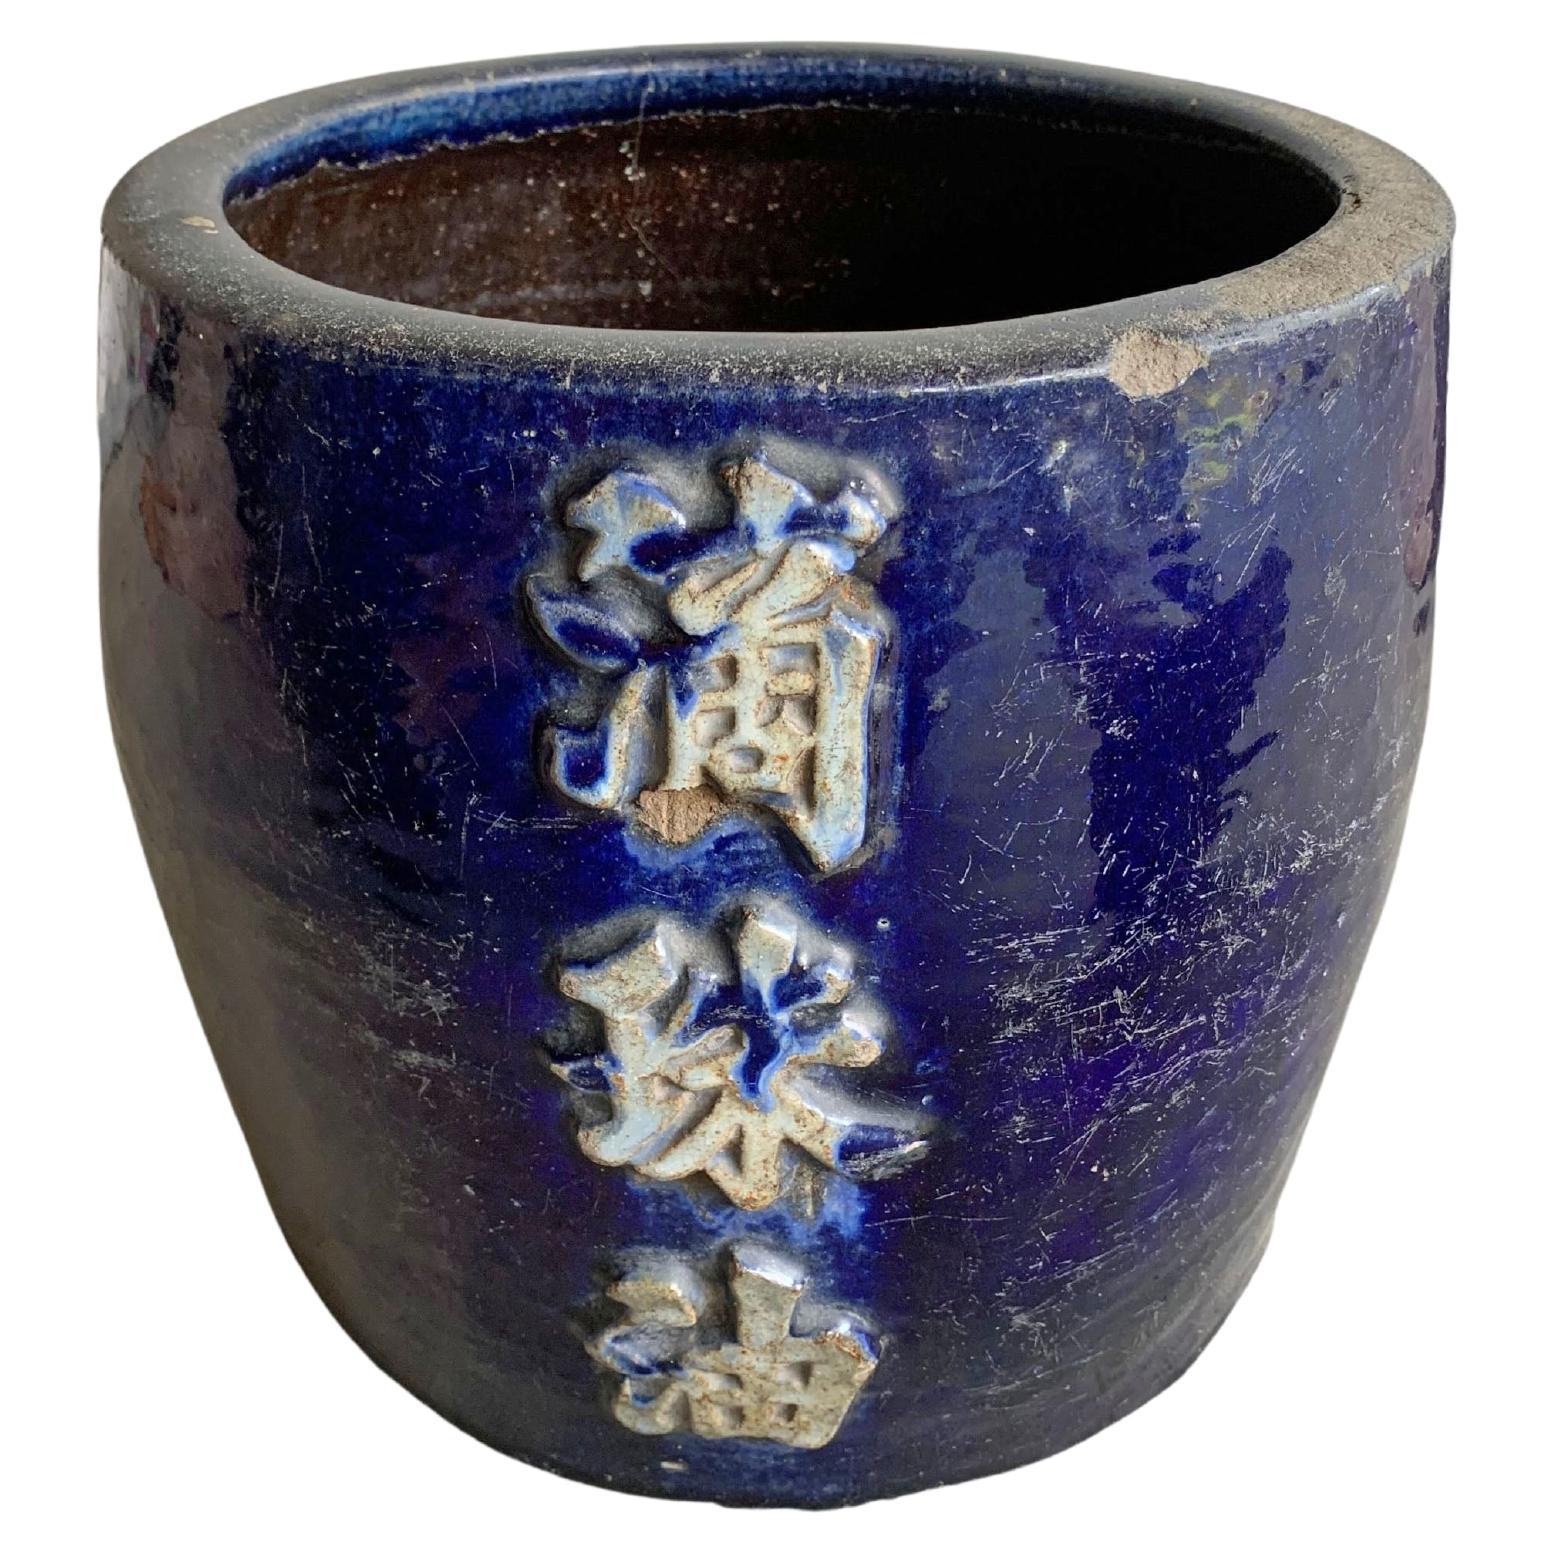 Vintage CachepotPlanter Ceramic Pottery Hand Crafted Vase Plant Flower Holder Cache Pot Satin Glaze Speckled Olive Green Pedestal Base